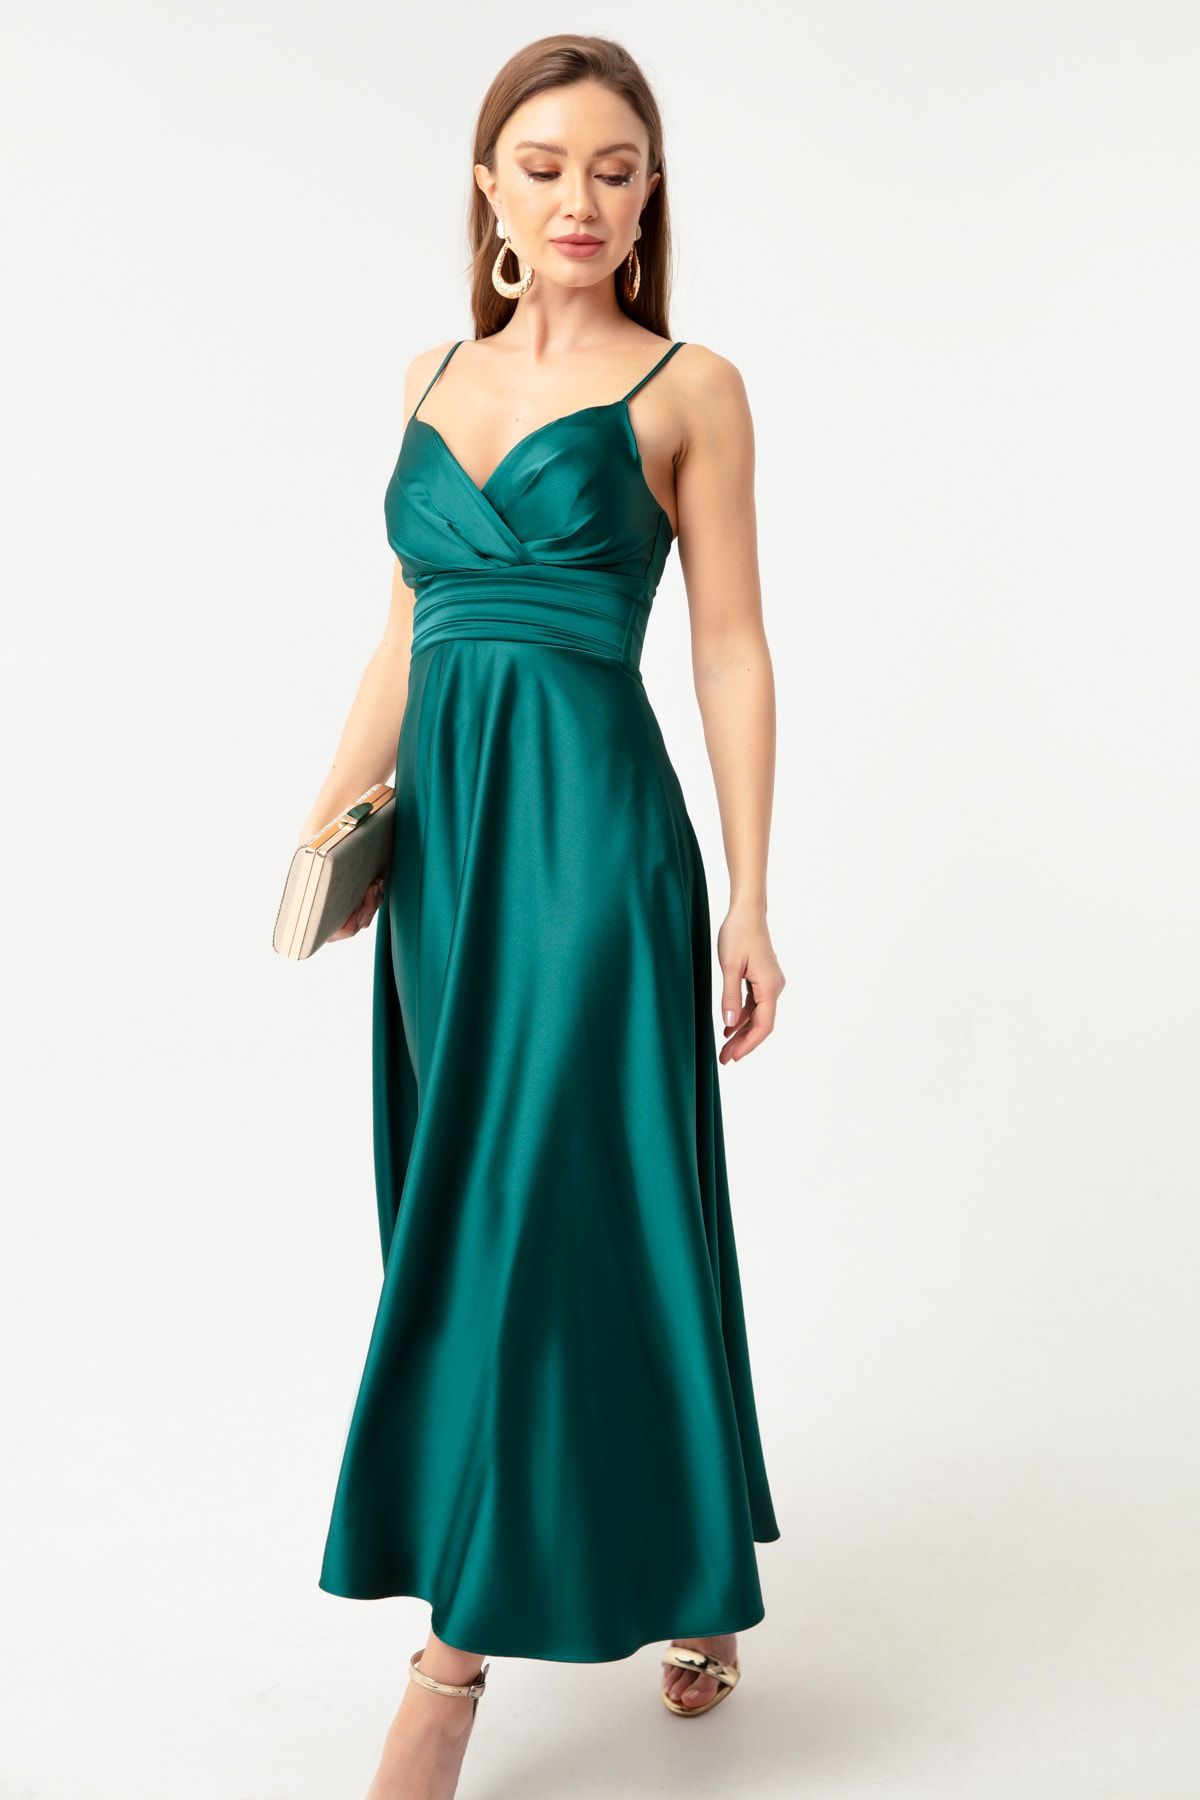 OFZE Kadın Zümrüt Yeşili Ip Askılı Bel Kemerli Saten Midi Abiye & Mezuniyet Elbisesi